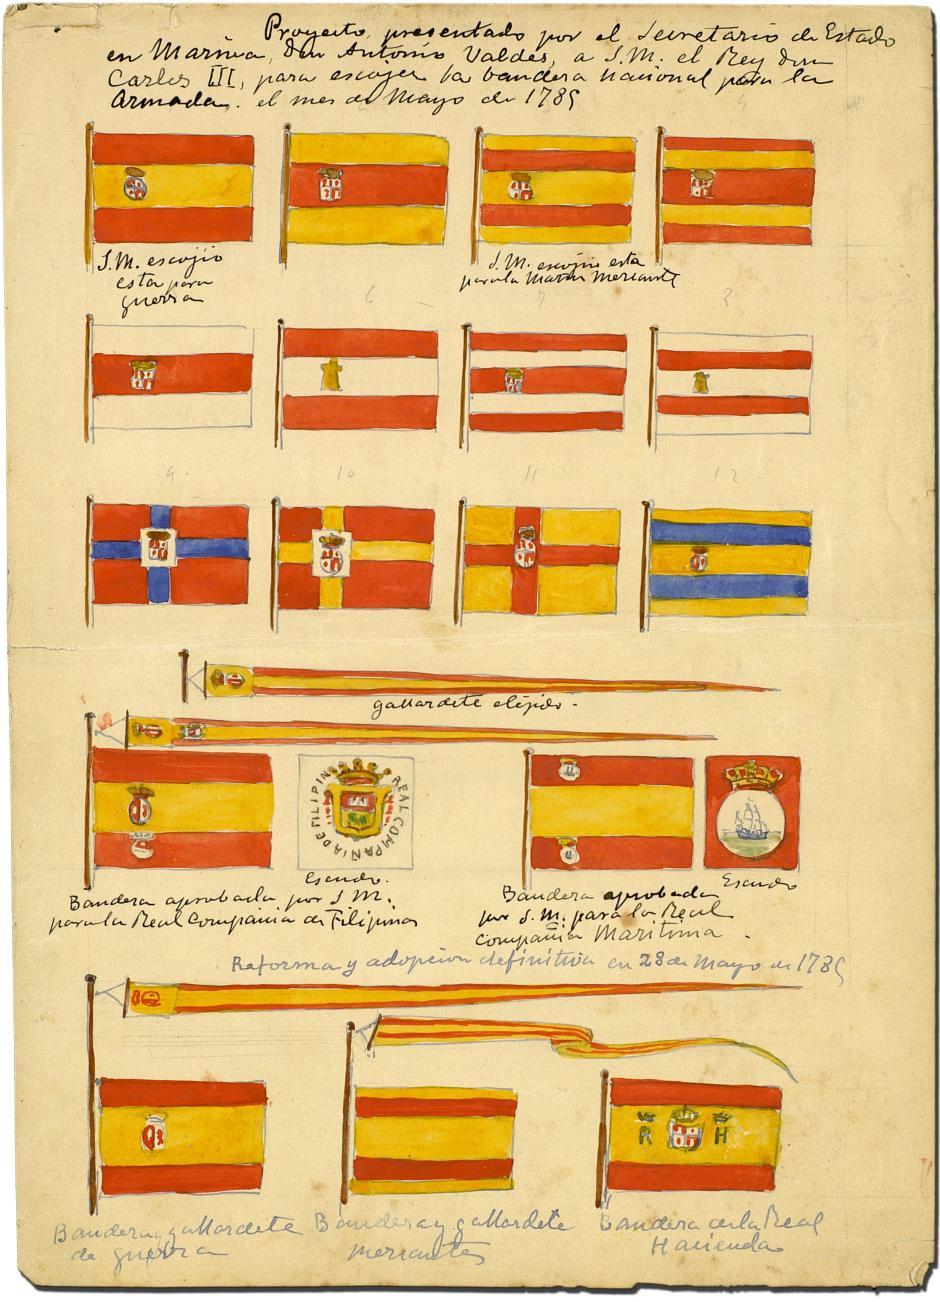 Las propuestas originales hechas a Carlos III en 1785